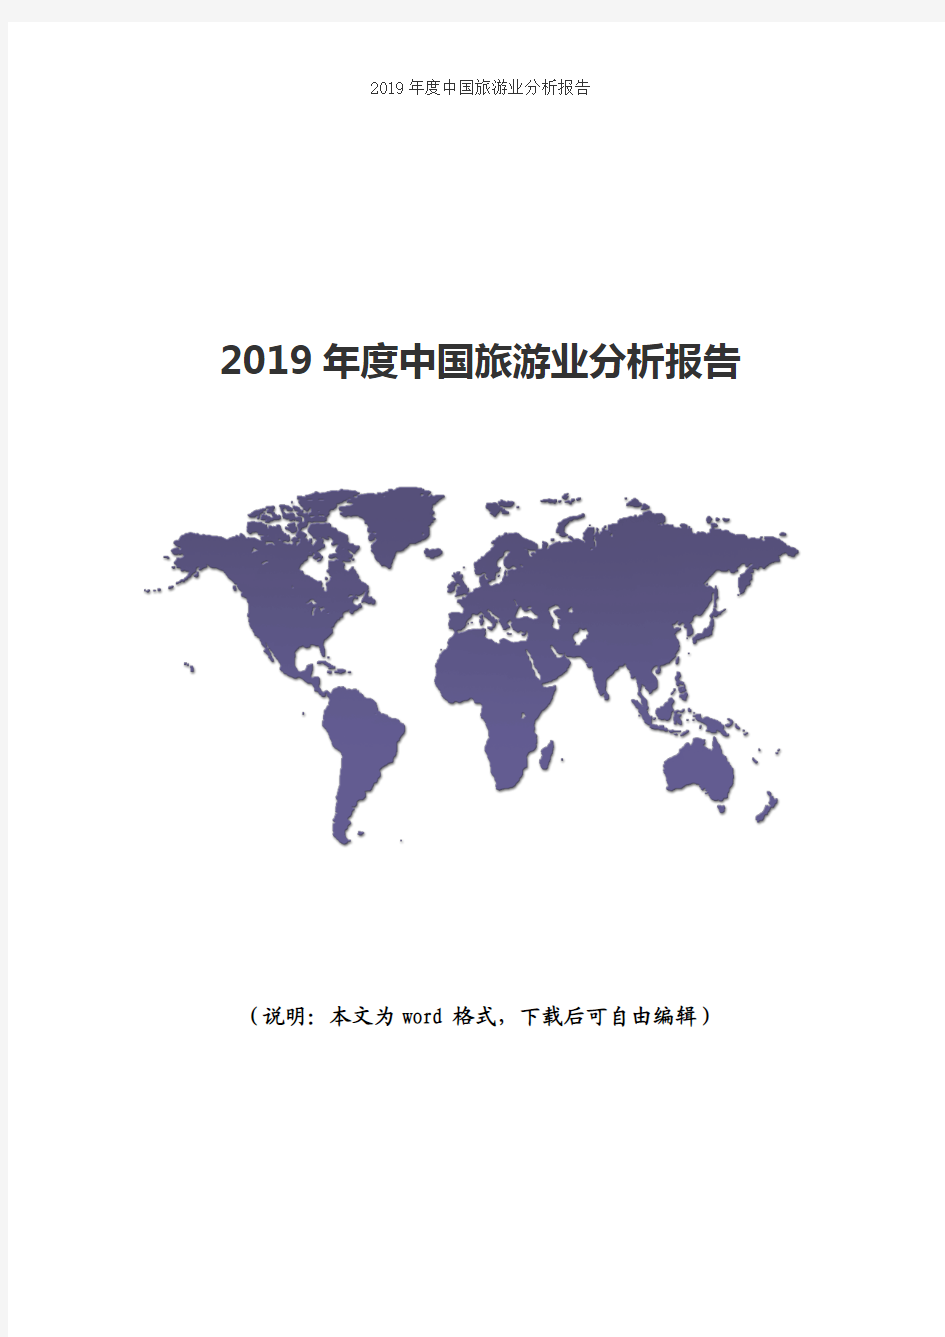 2019年度中国旅游业分析报告